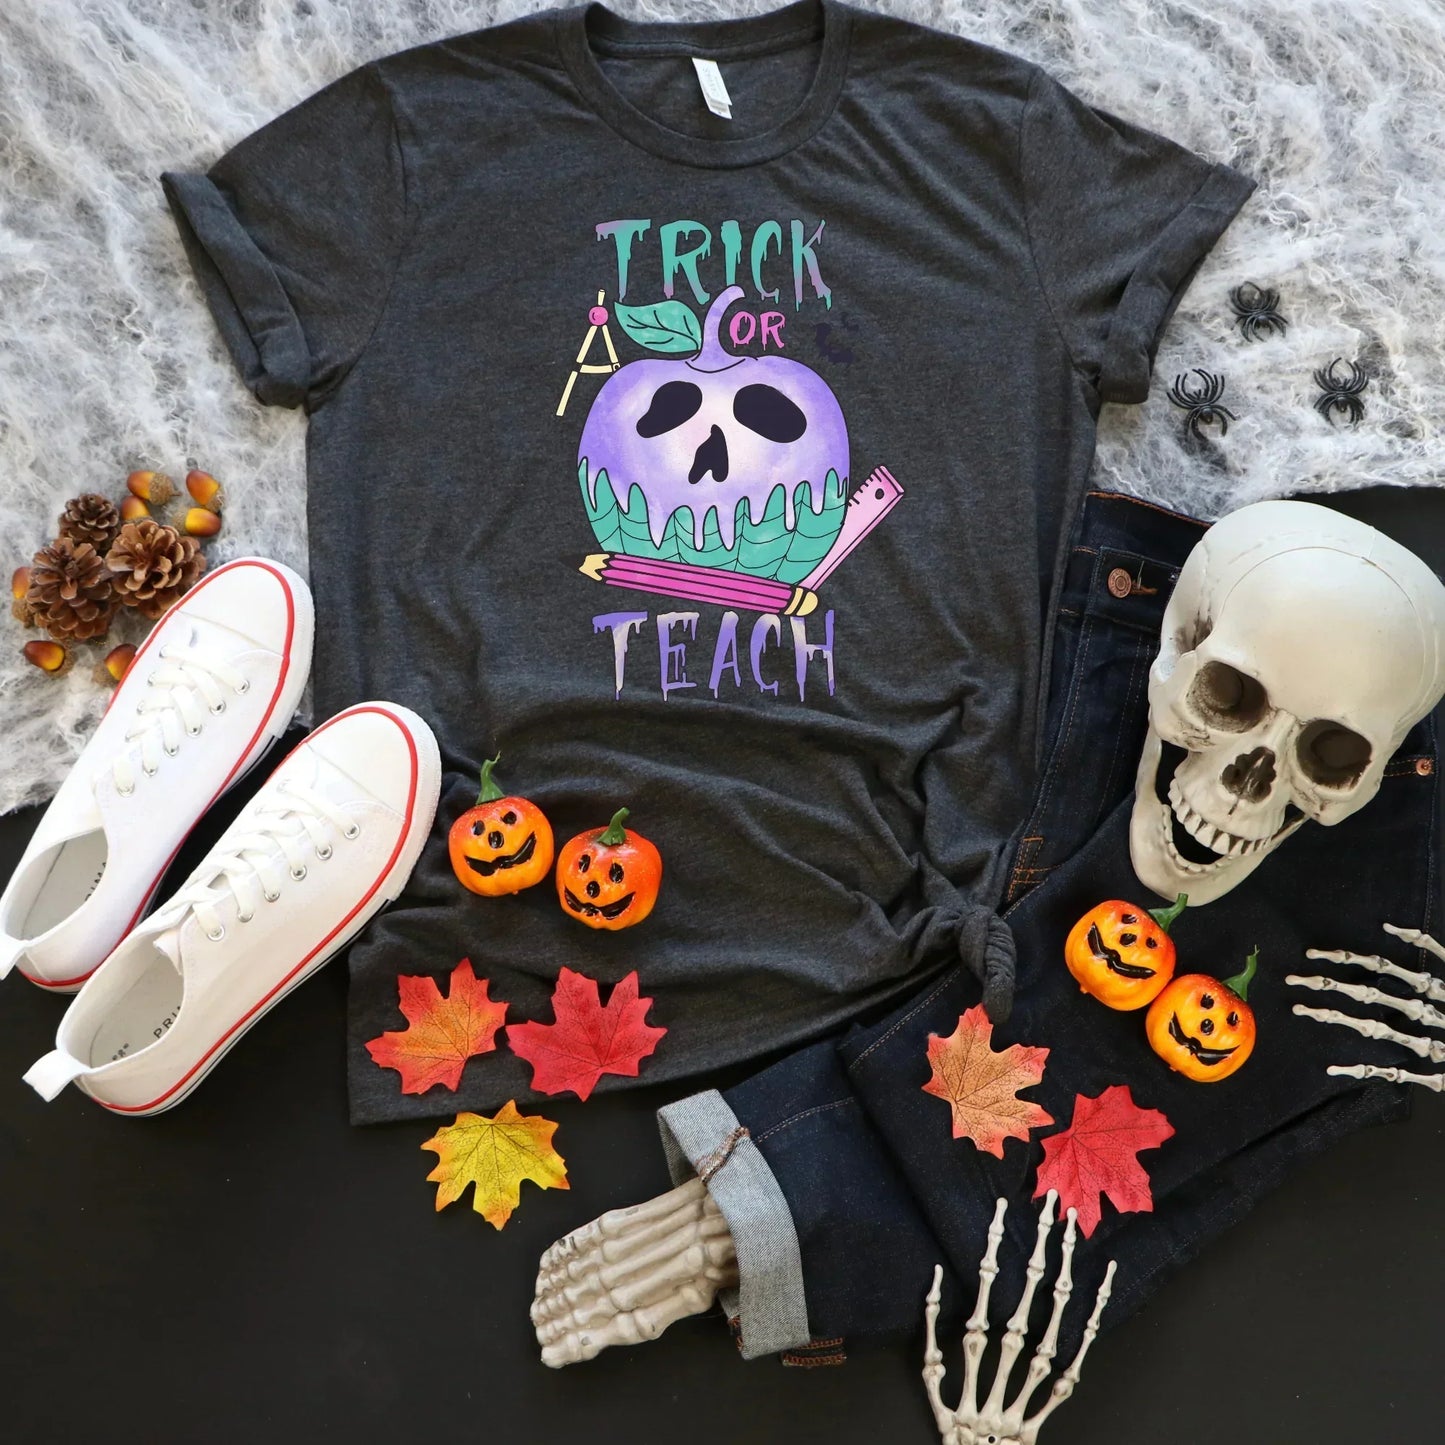 Trick or Teach, Halloween Teacher Shirt